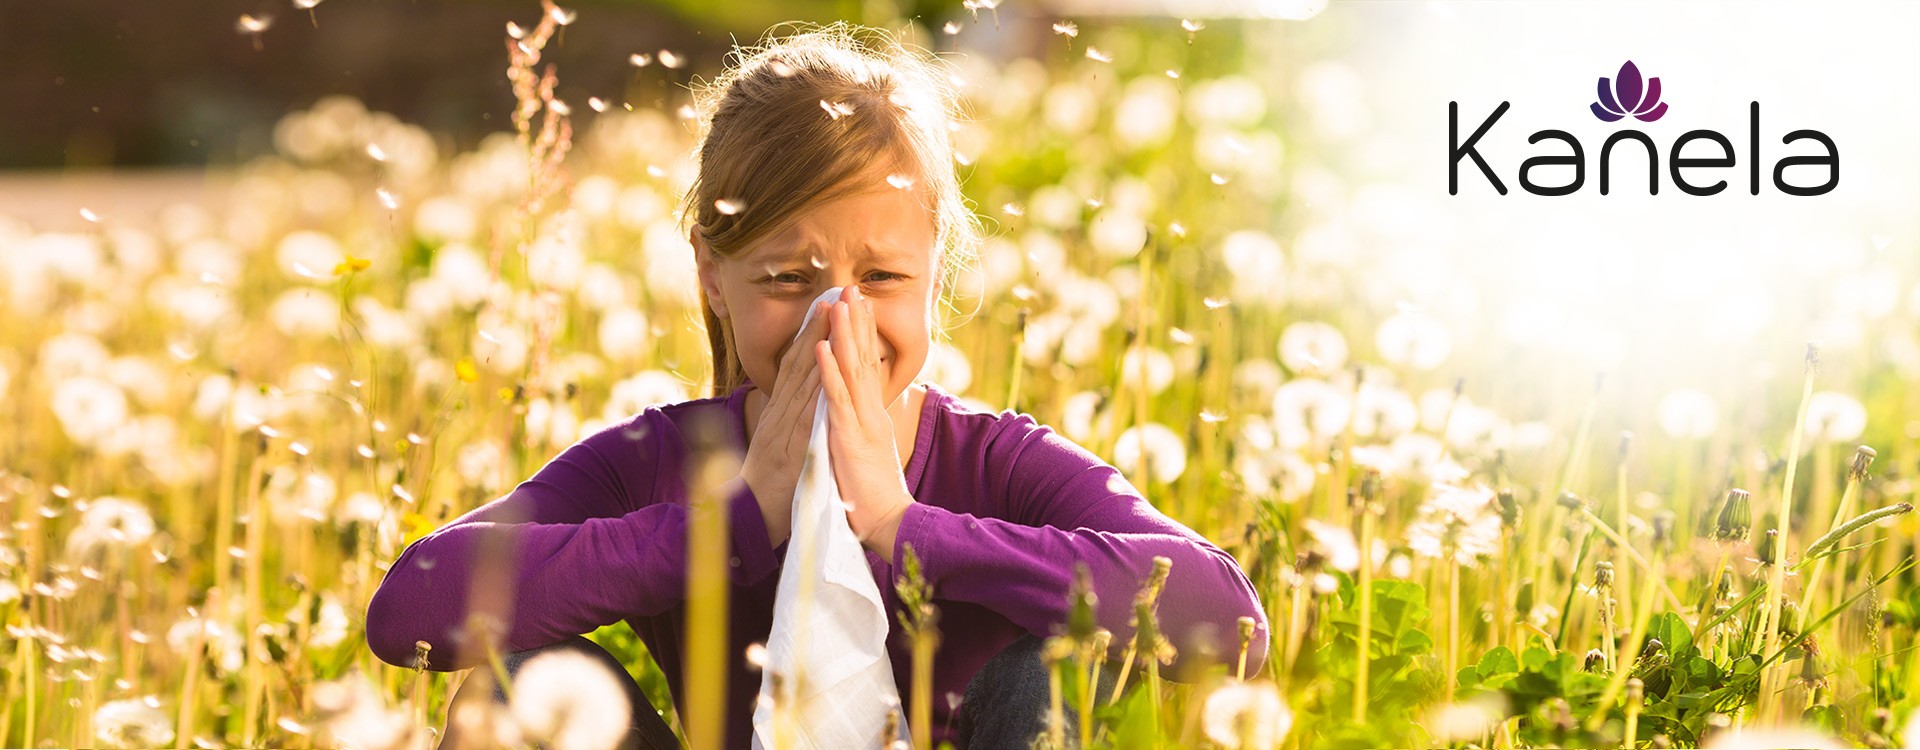 Pollenallergie und Heuschnupfen - was hilft?